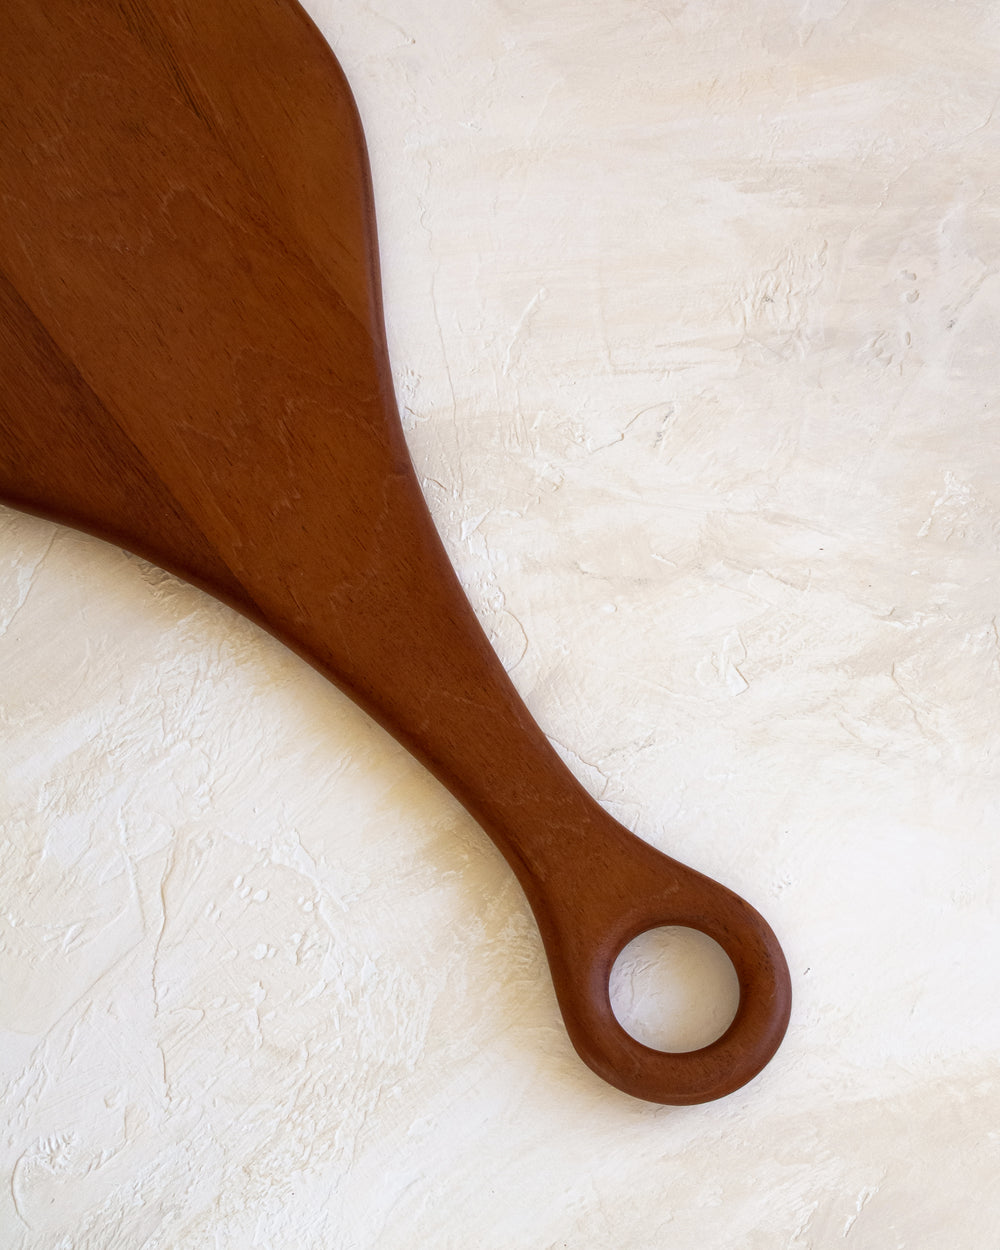 Itza Wood Small Paddle Board - Manchiche